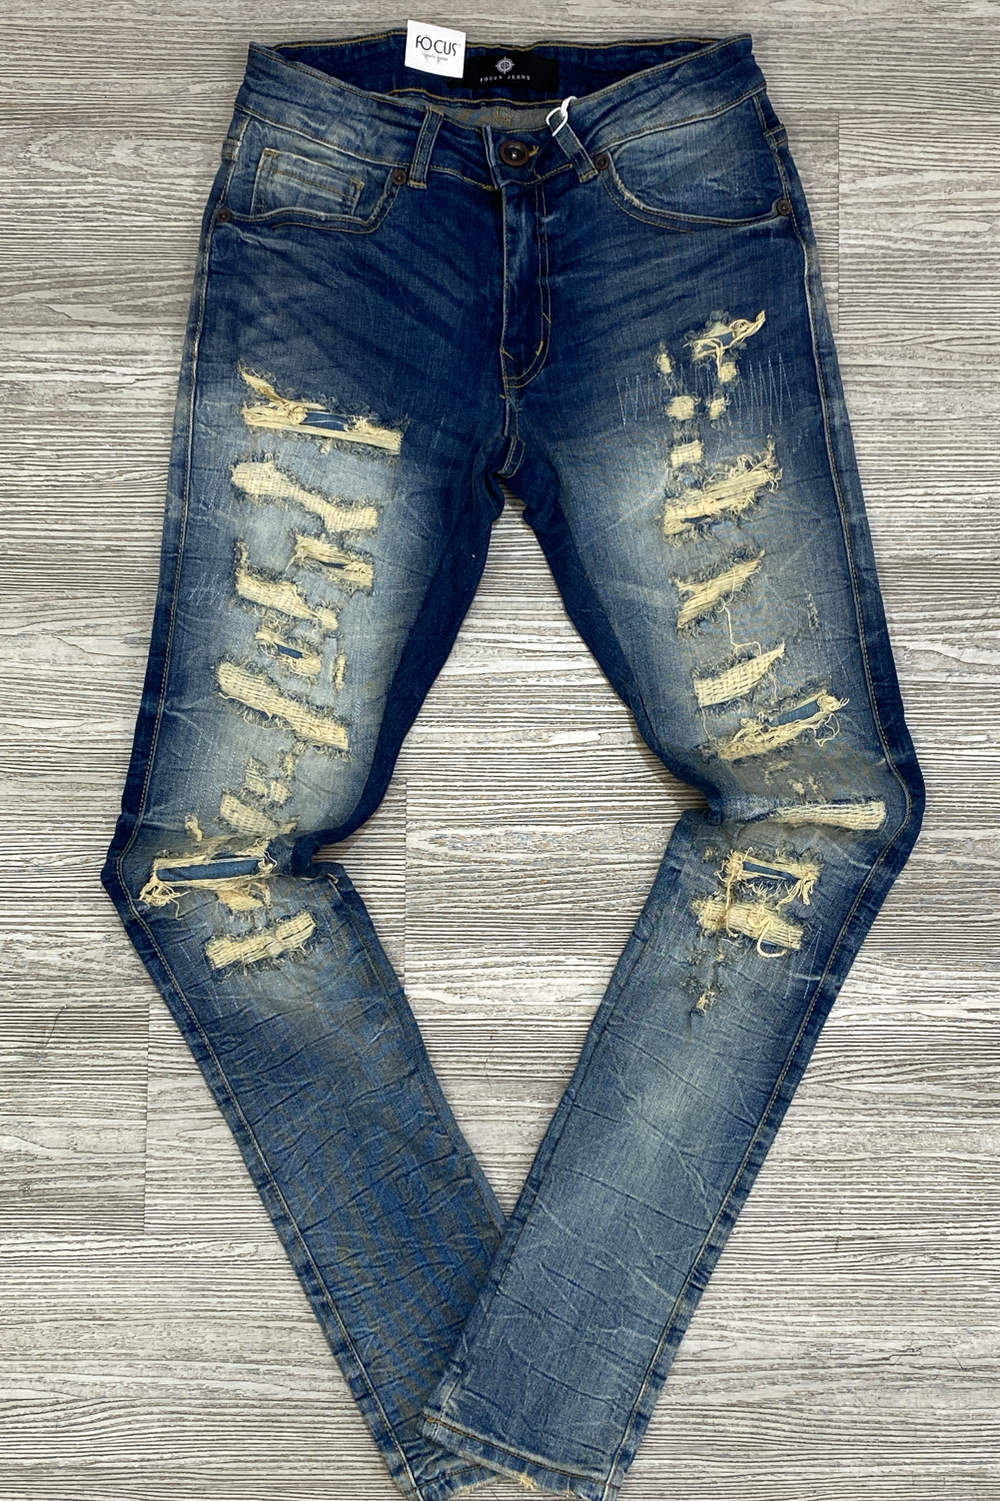 Focus- r & r distressed jeans (vintage)